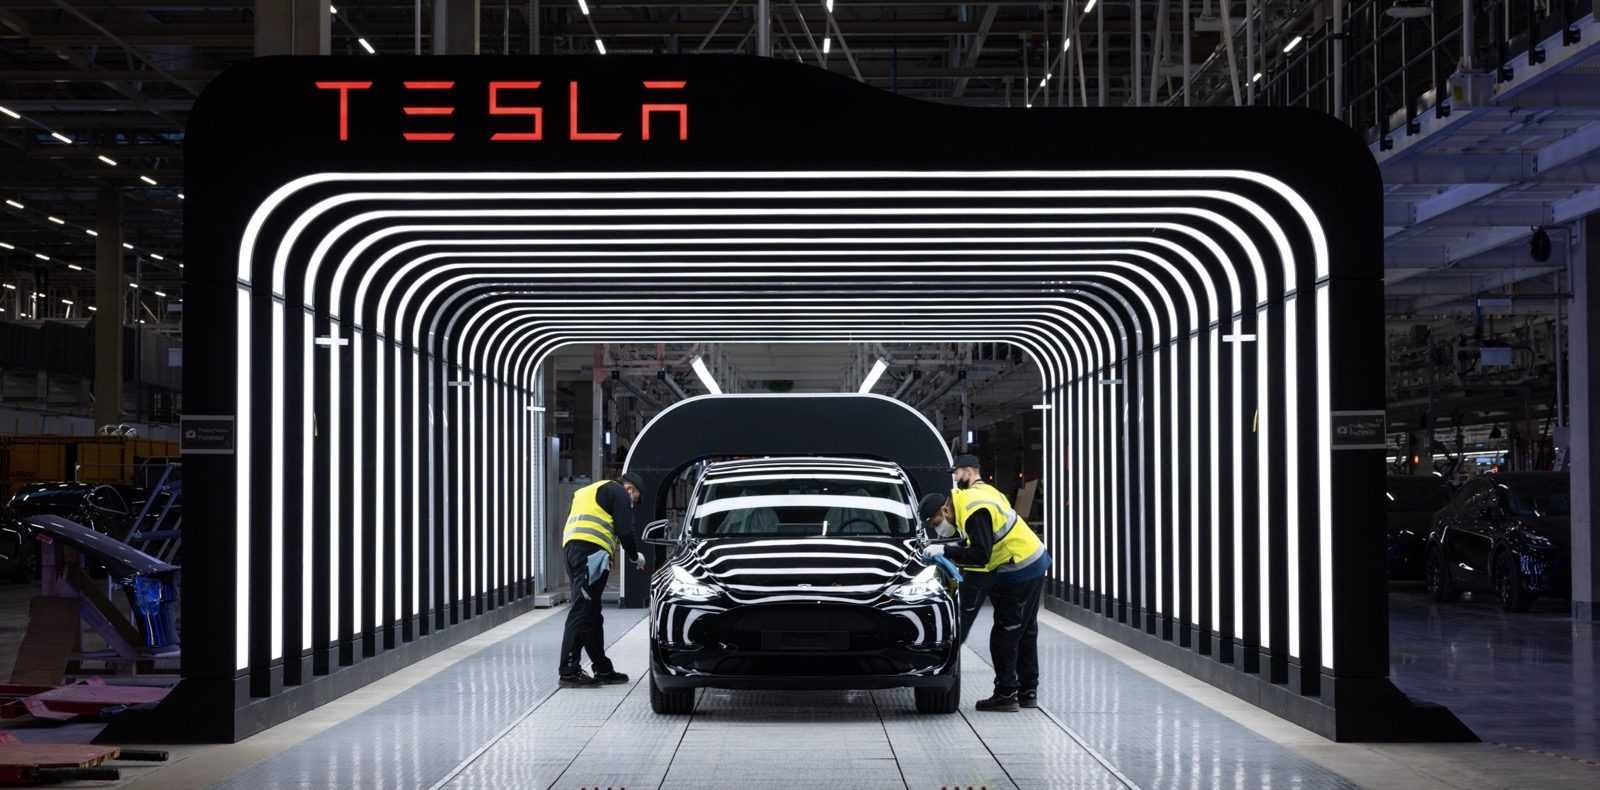 Tesla in 2021